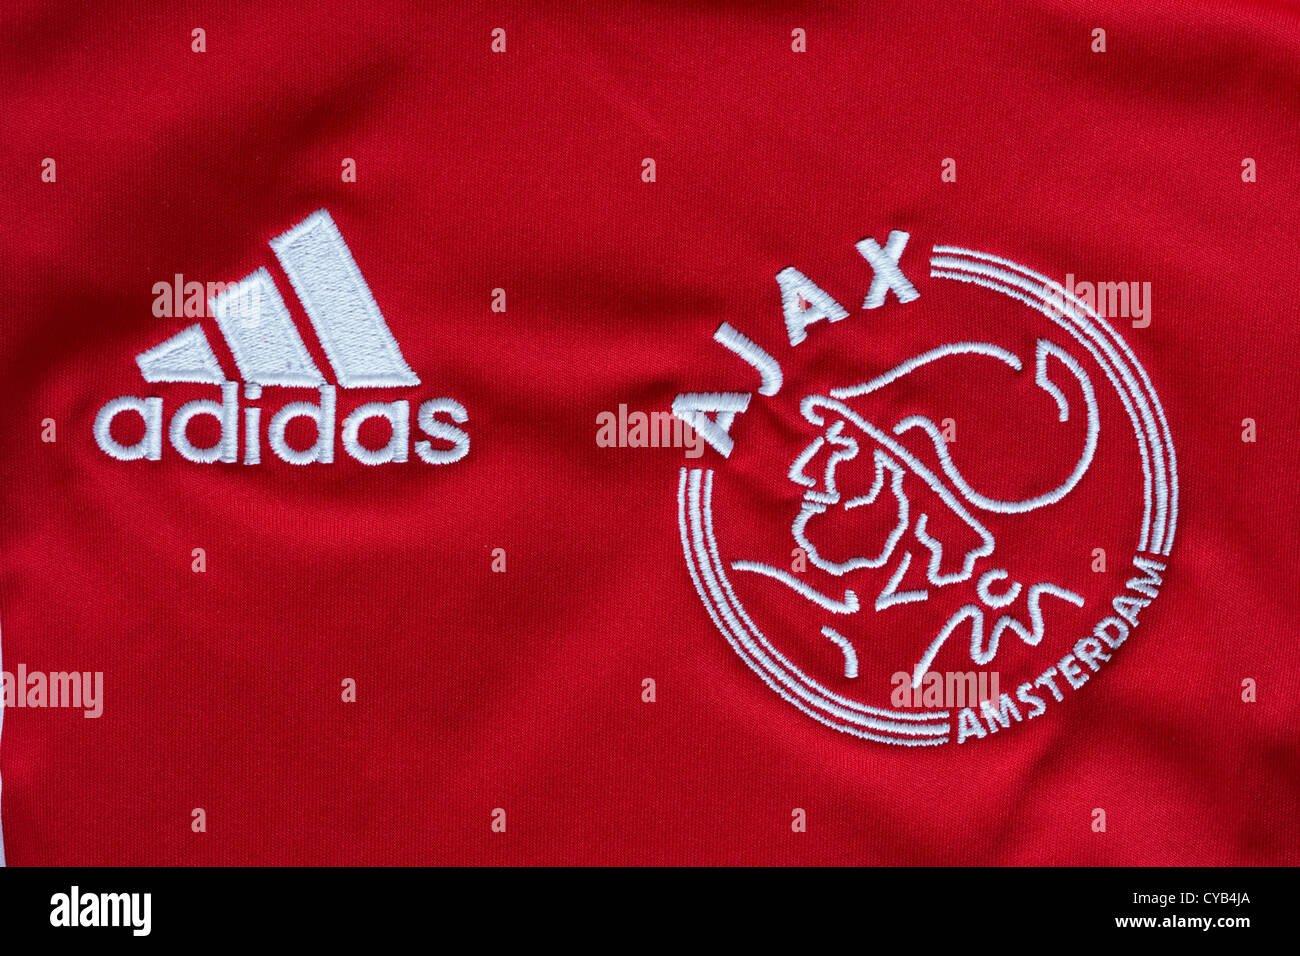 Adidas y el Ajax de Amsterdam logotipos en rojo camiseta de fútbol Fotografía de -